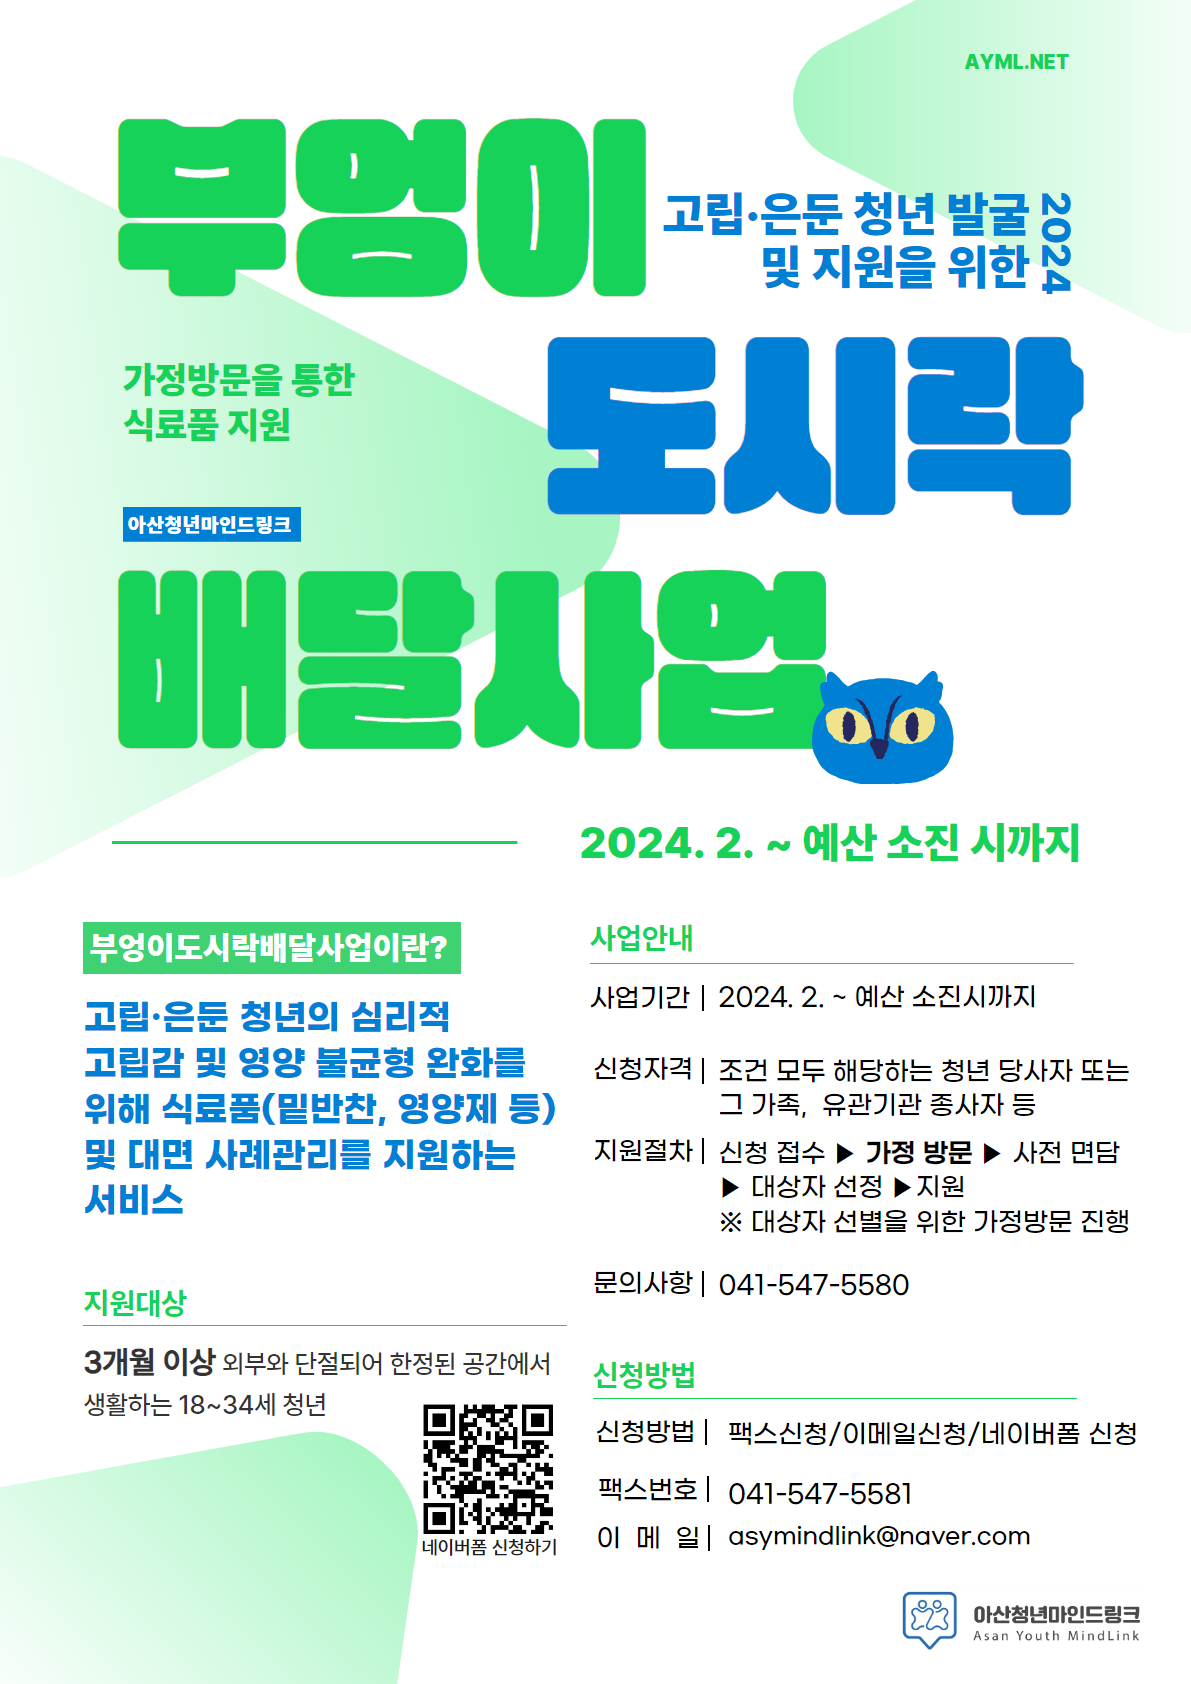 2024년 고립·은둔 청년 발굴 및 지원을 위한 부엉이도시락배달사업 홍보 포스터.png